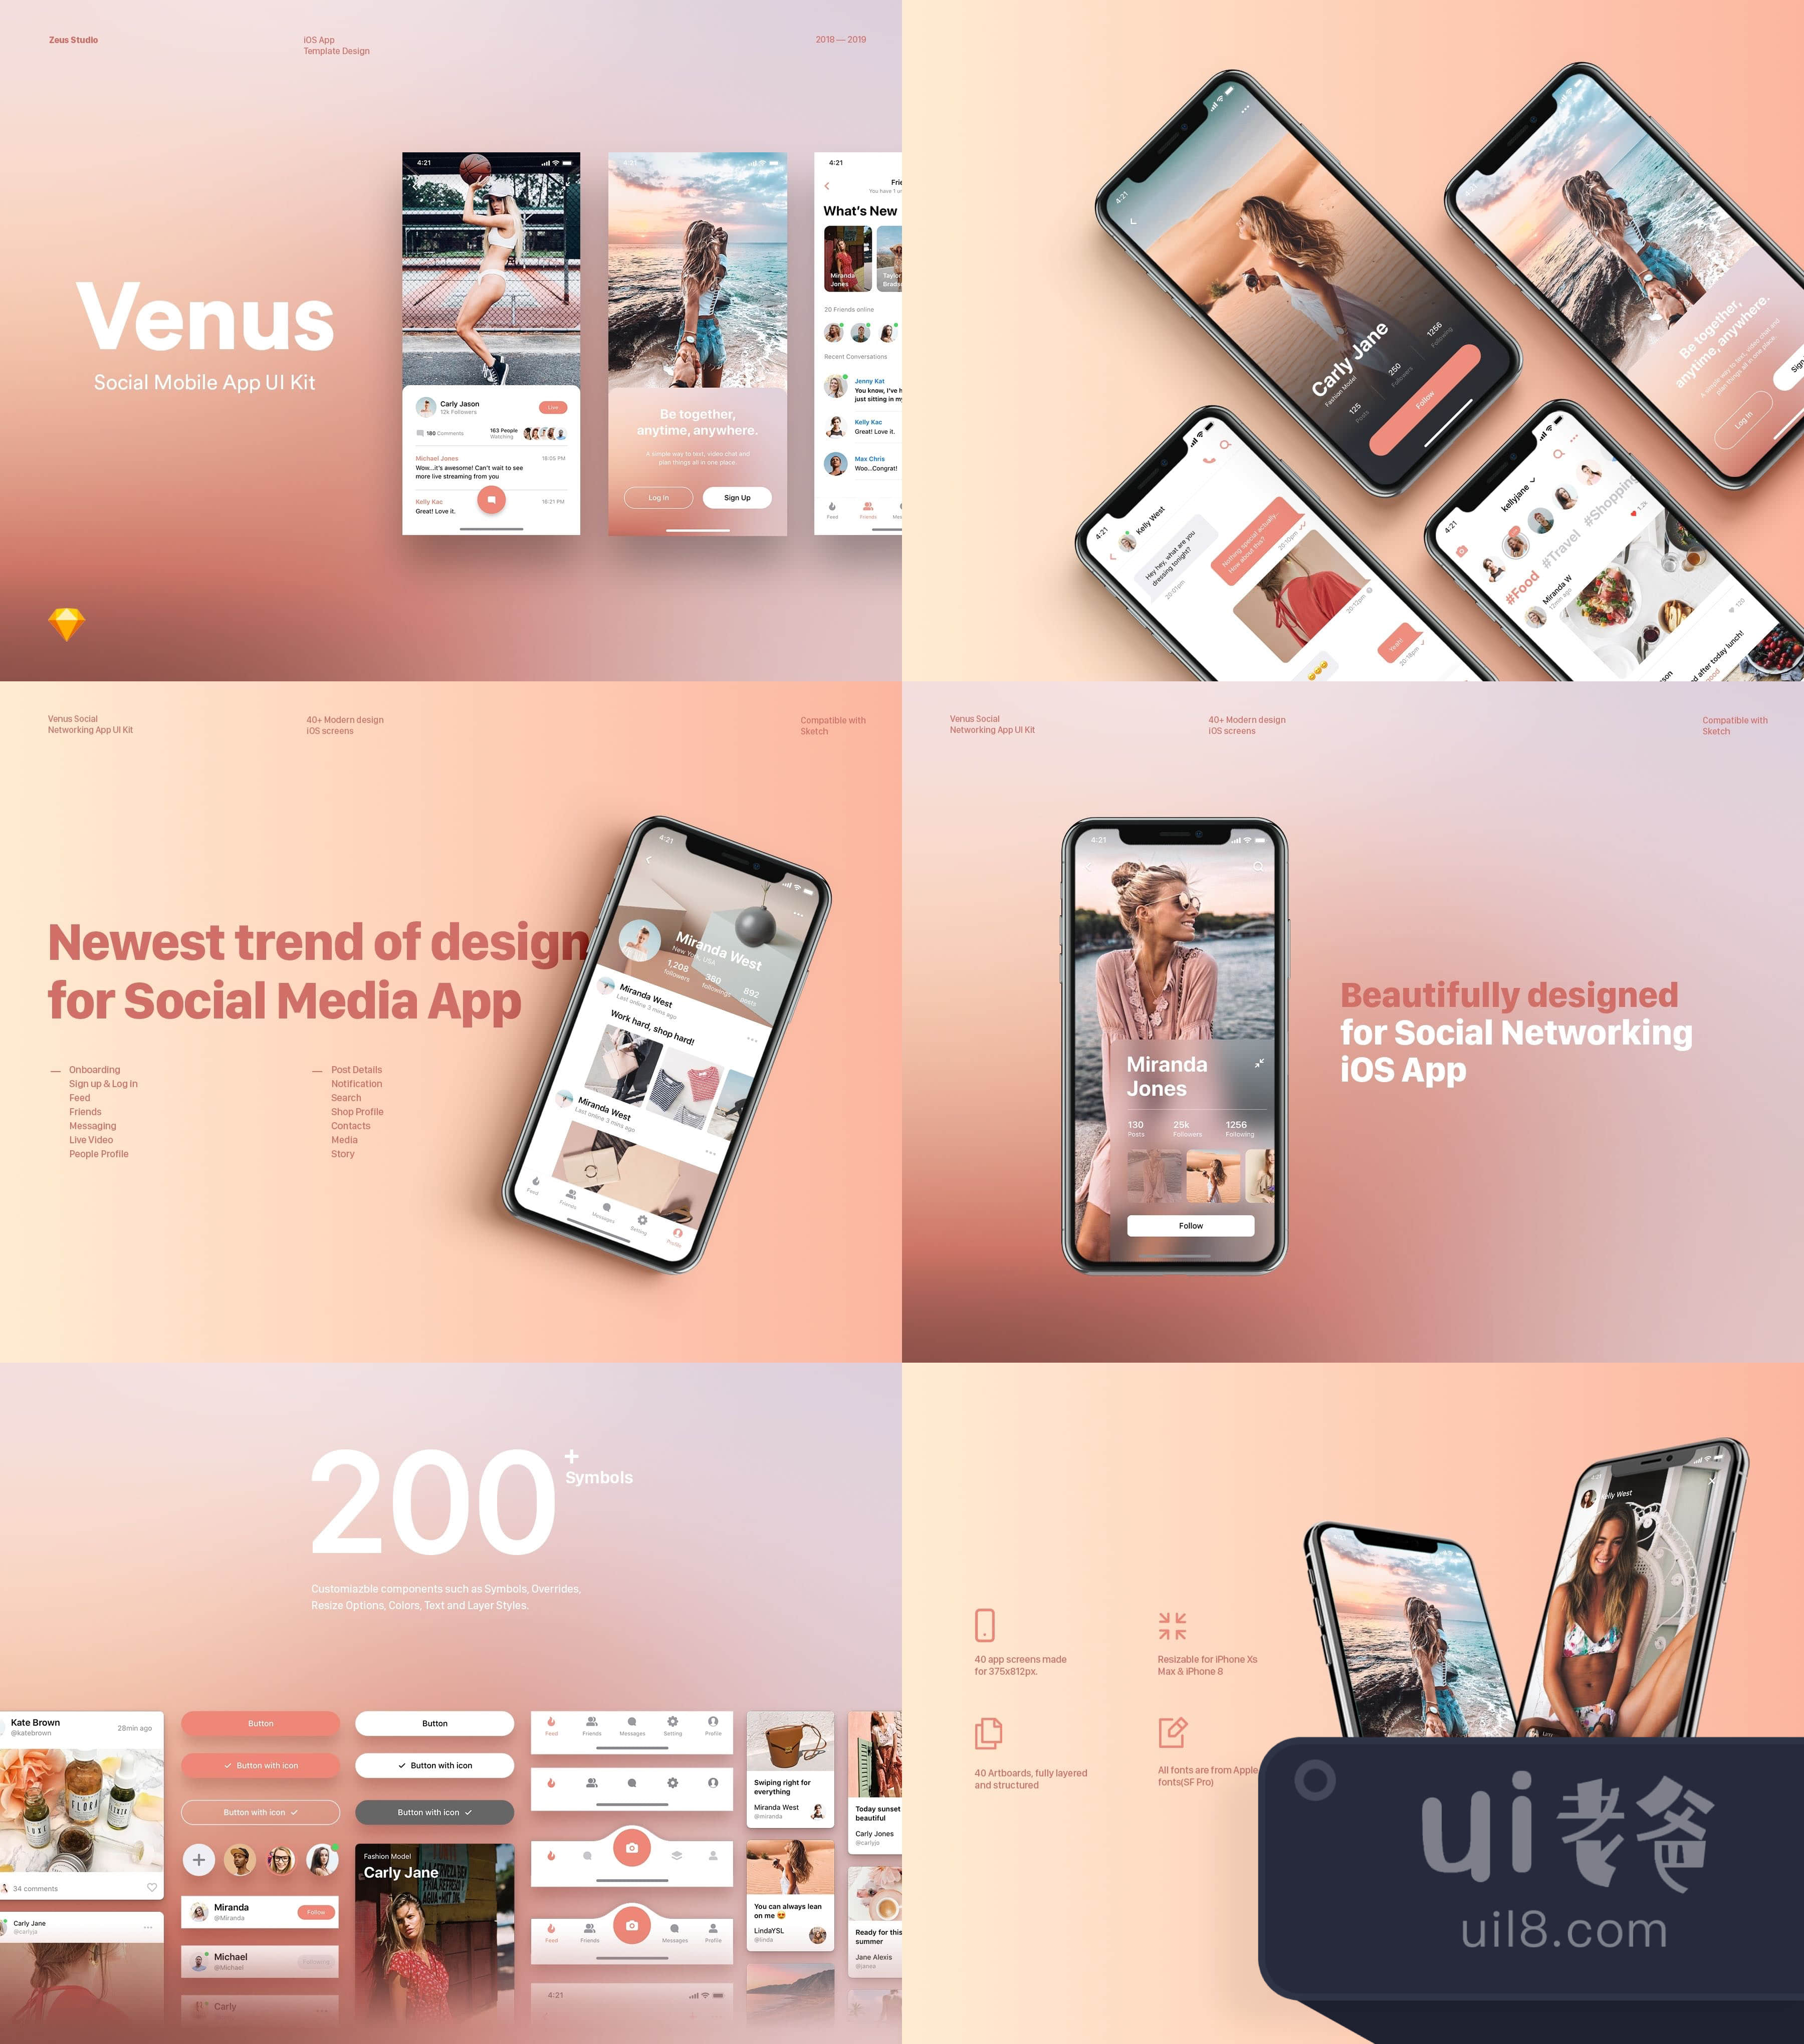 维纳斯社会移动UI套件 (Venus Social Mobile UI Kit)插图1